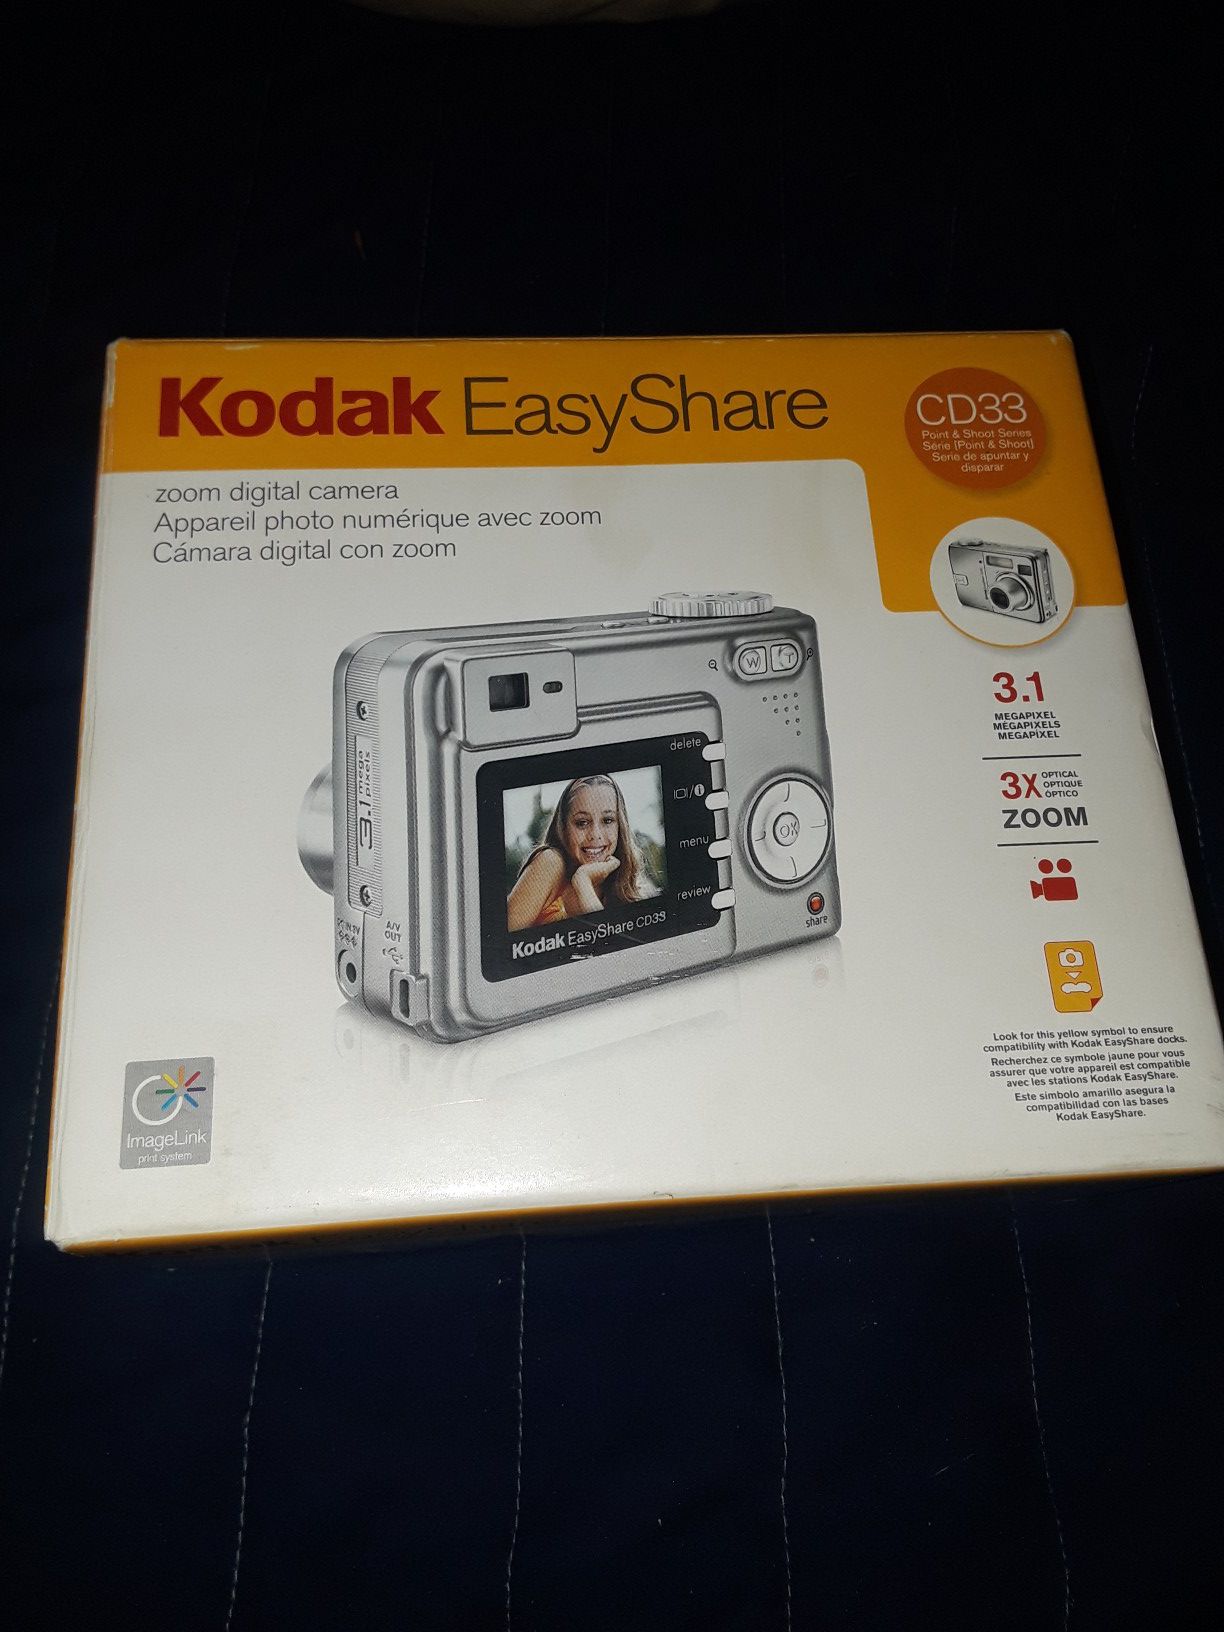 Kodak easy share digital camera CD33